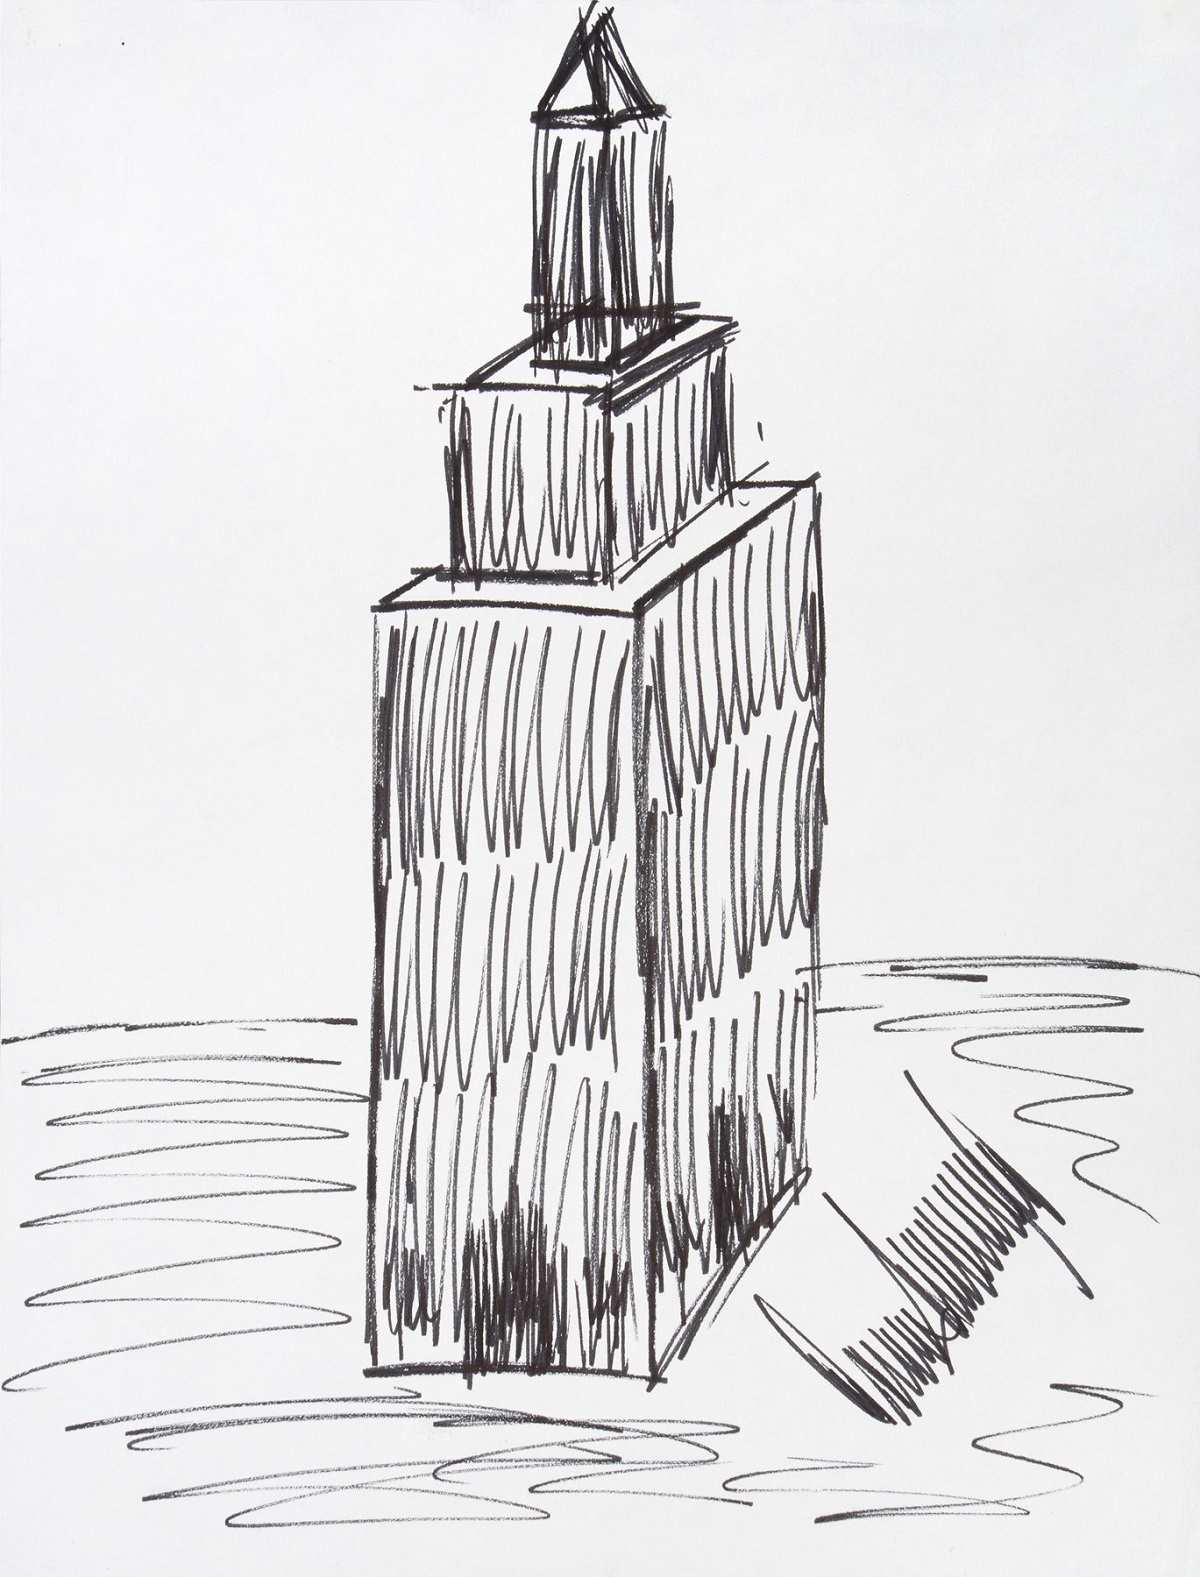 Subastan en 16.000 dólares dibujo del edificio Empire State hecho por Trump